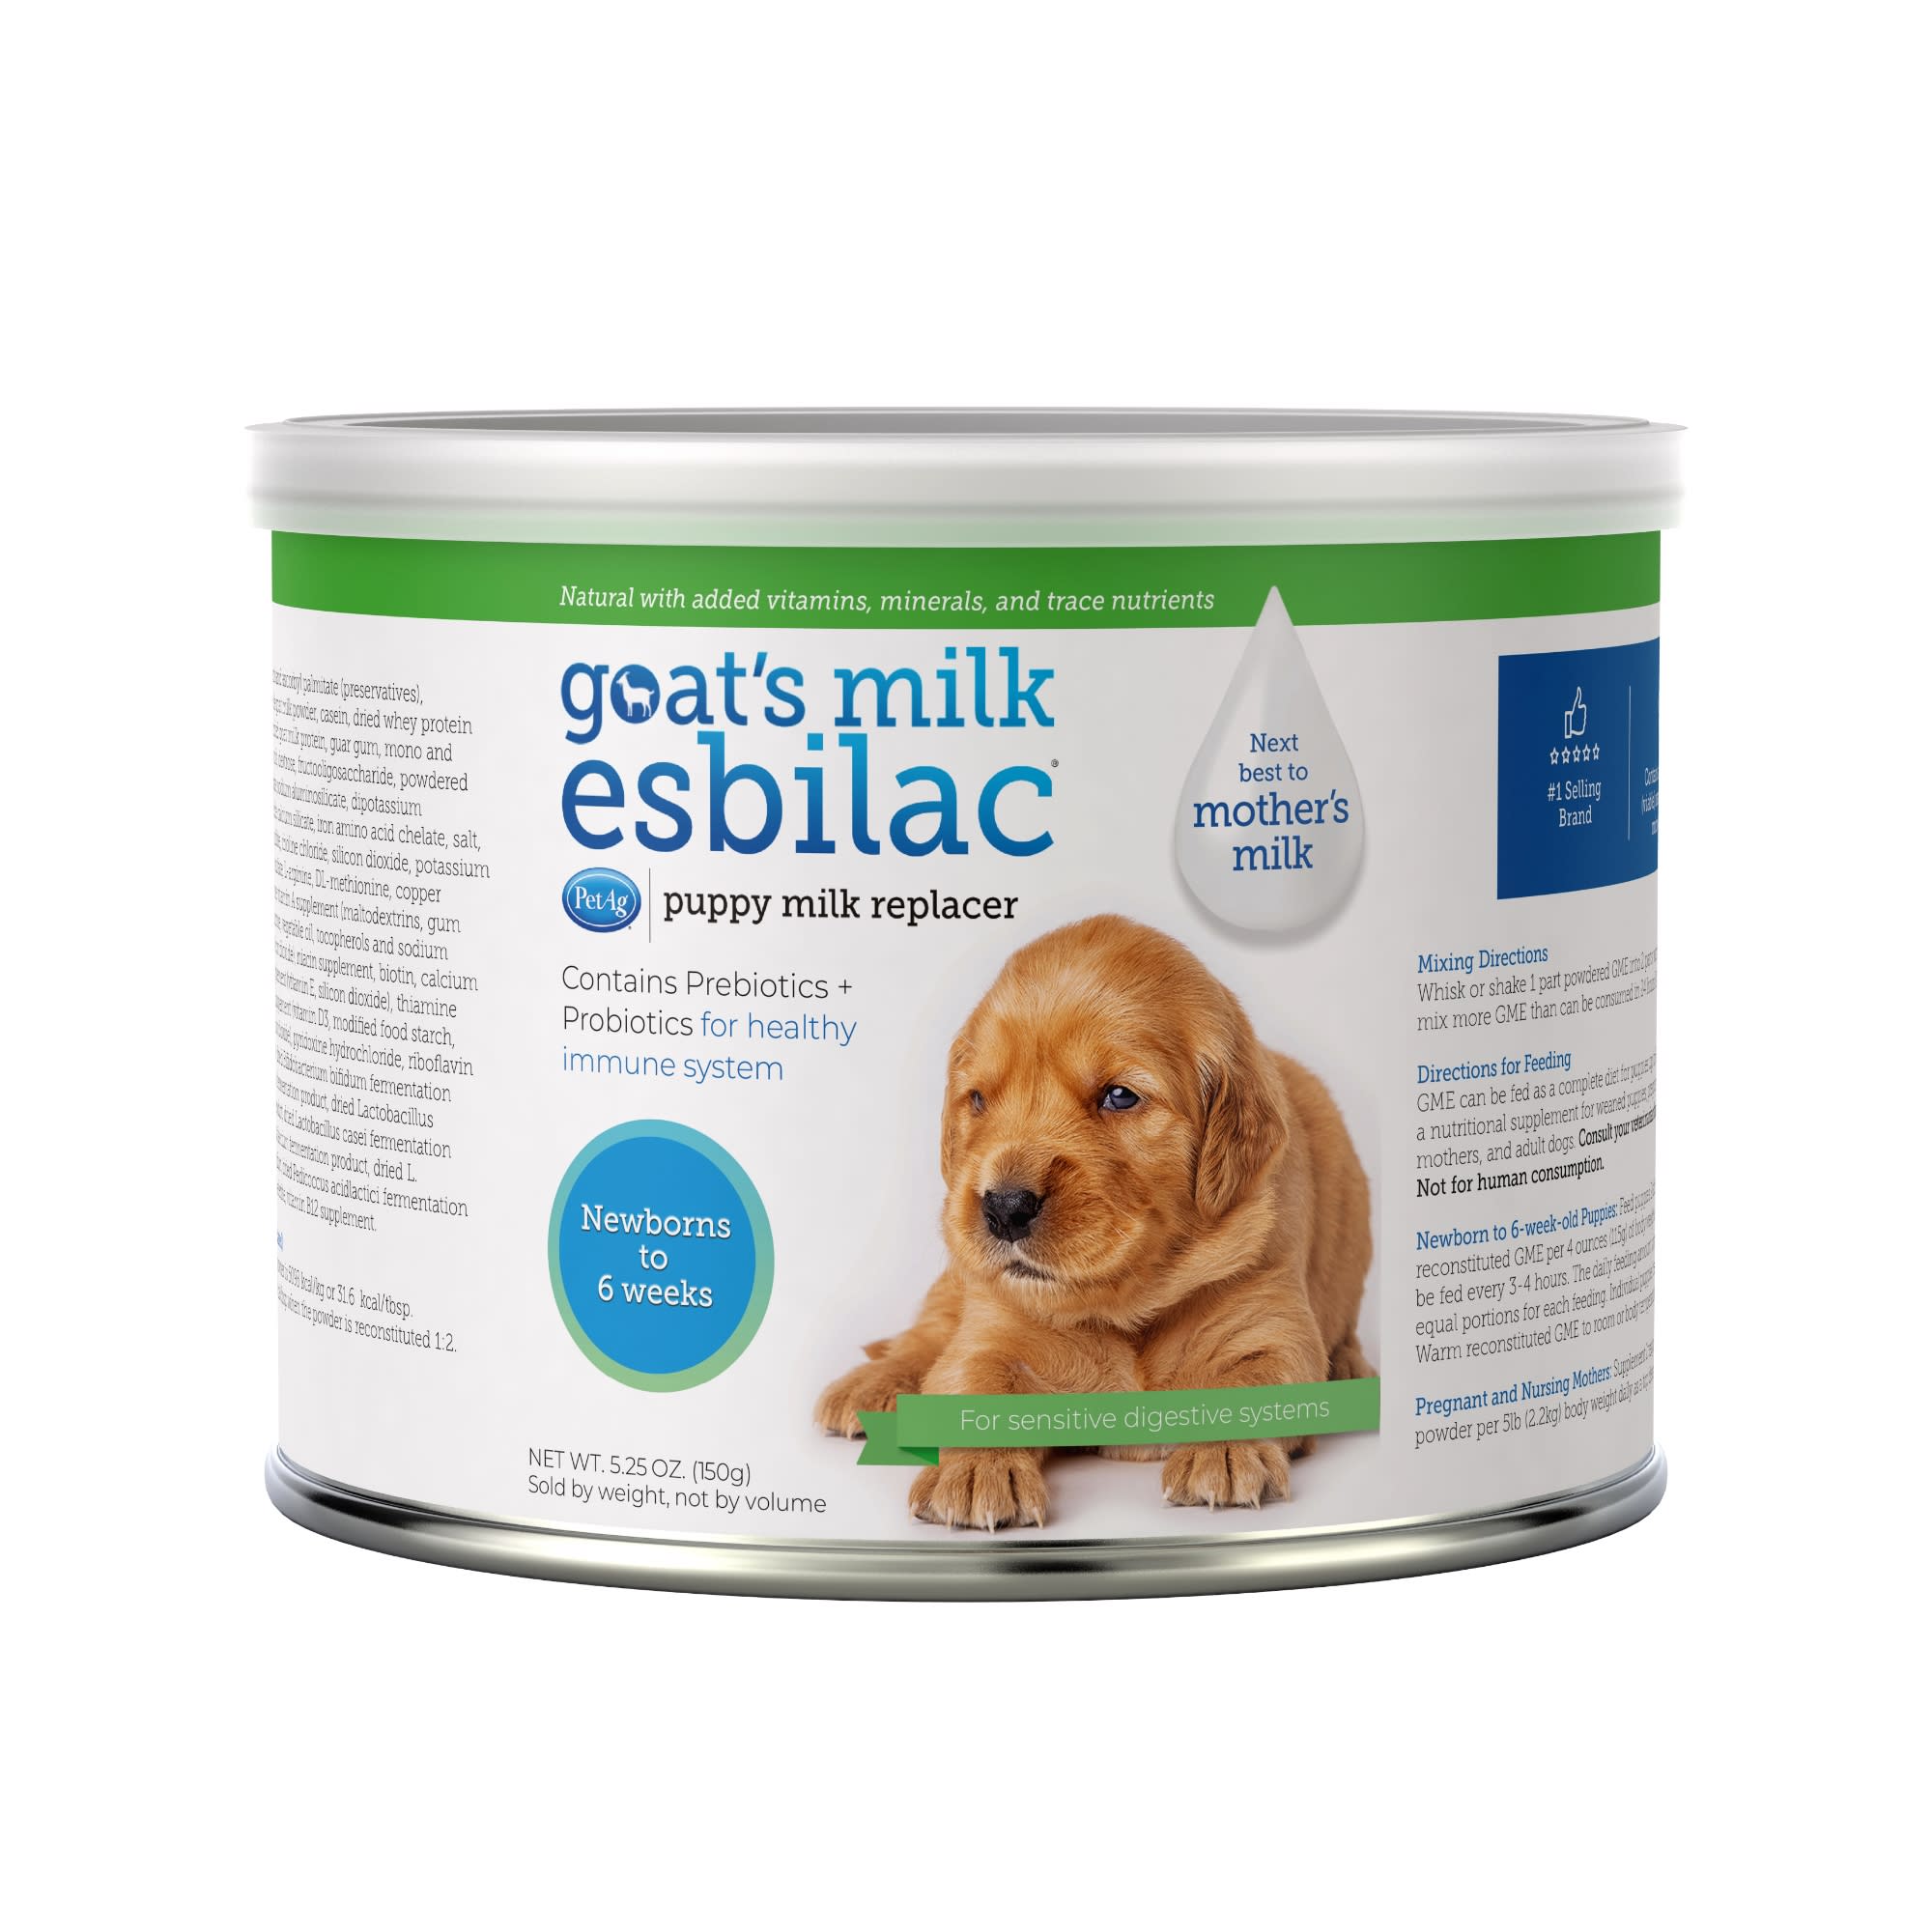 Photos - Dog Medicines & Vitamins PetAg PetAg Goats Milk Esbilac Powder for Puppies, 5.25 OZ 99459